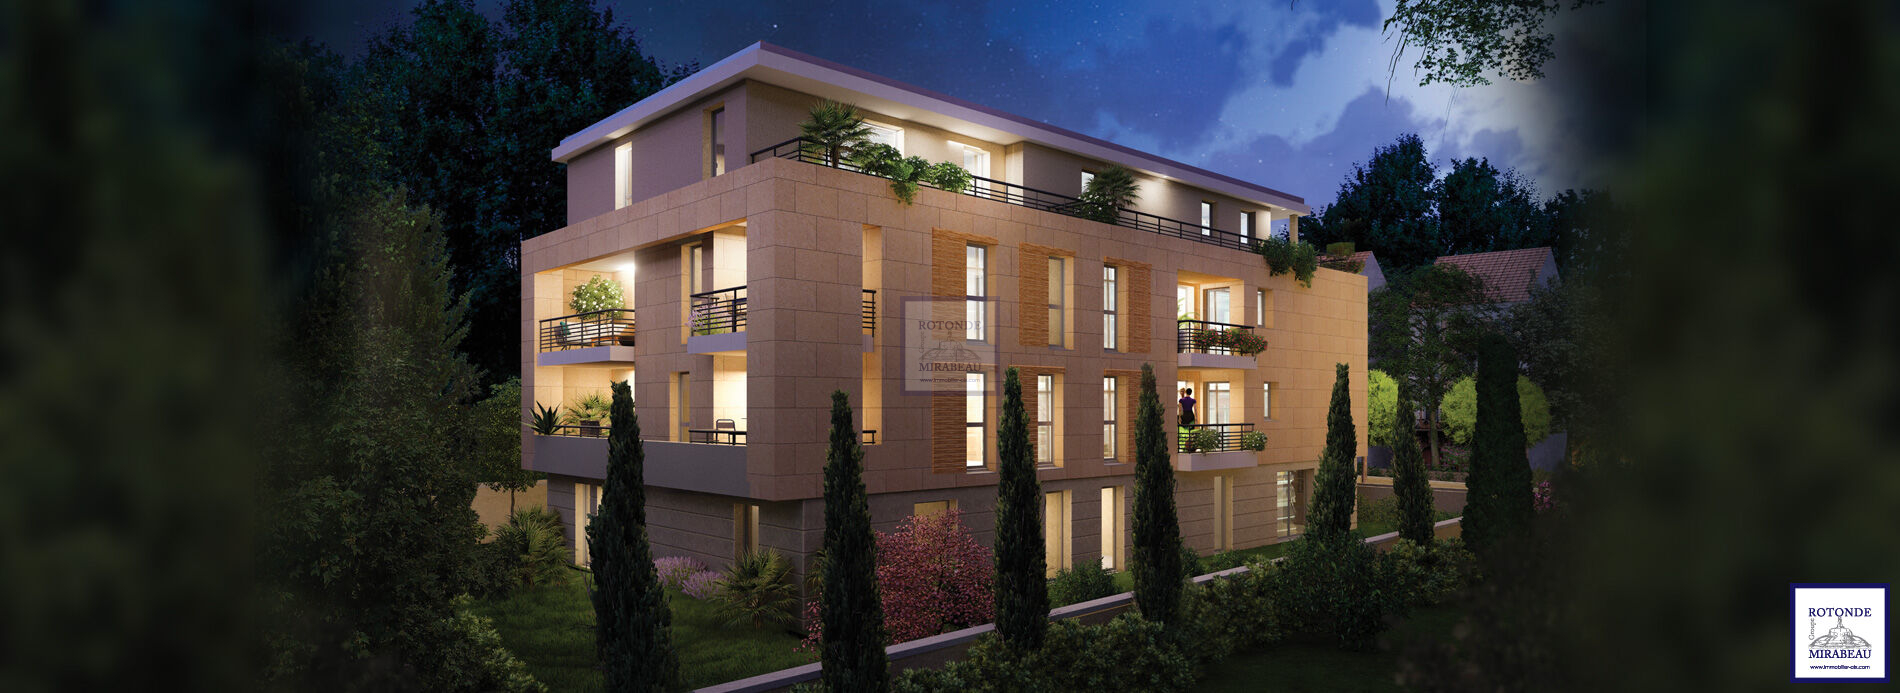 Vente Appartement AIX EN PROVENCE surface habitable de 38.77 m²